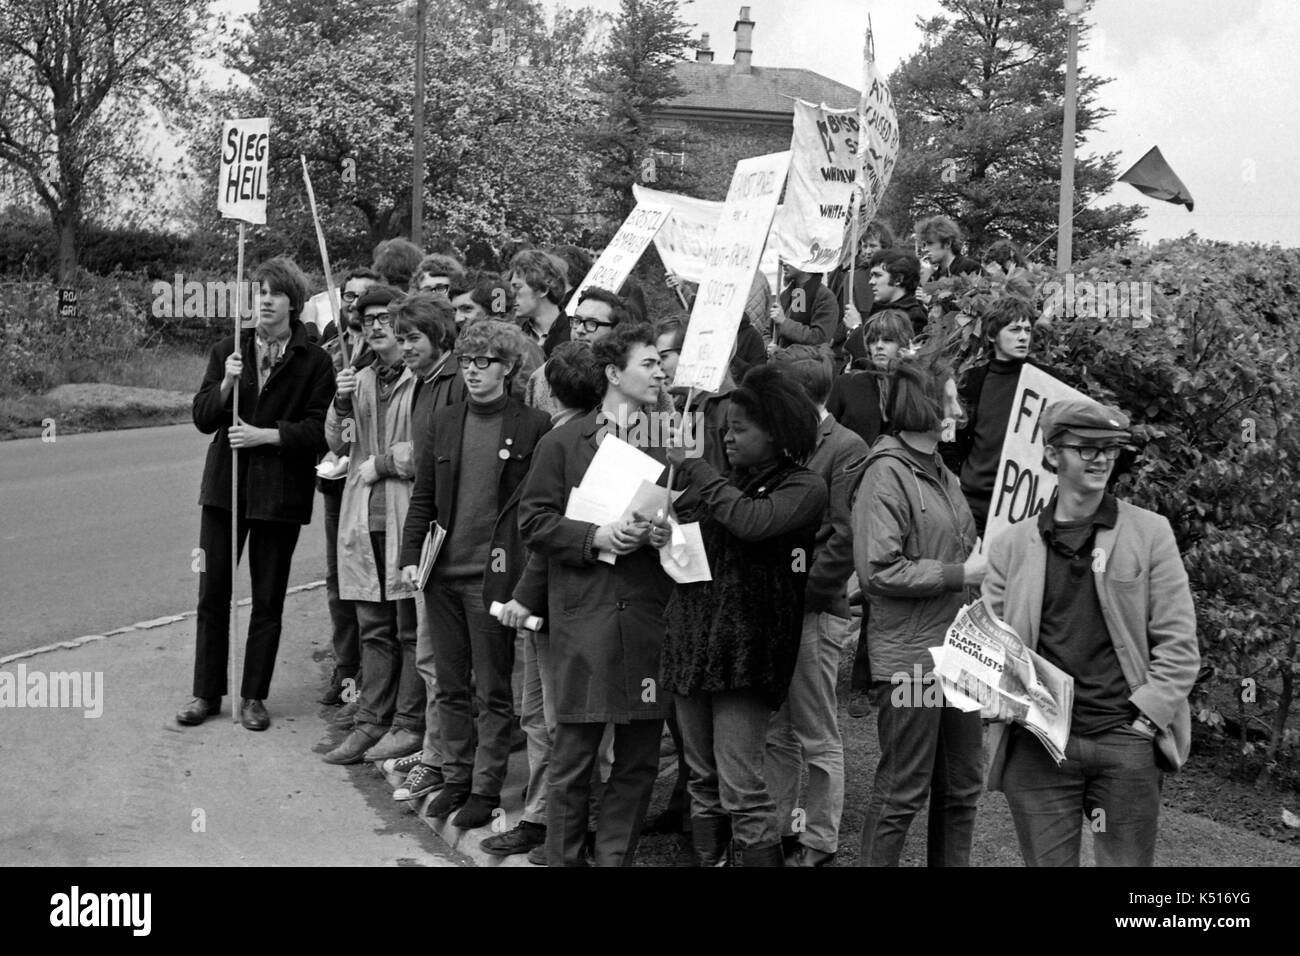 Enoch Powell Protest: Anti-Rassismus Studenten von der Universität Bristol gegen Enoch Powell MP drei Wochen nach seiner umstrittenen Rede über die Einwanderung, die als "Ströme von Blut"-Rede bekannt wurde. Sie Bestreikten einer öffentlichen Versammlung in Chippenham, Wiltshire am 11. Mai 1968, als er mit dem Auto angekommen. Stockfoto